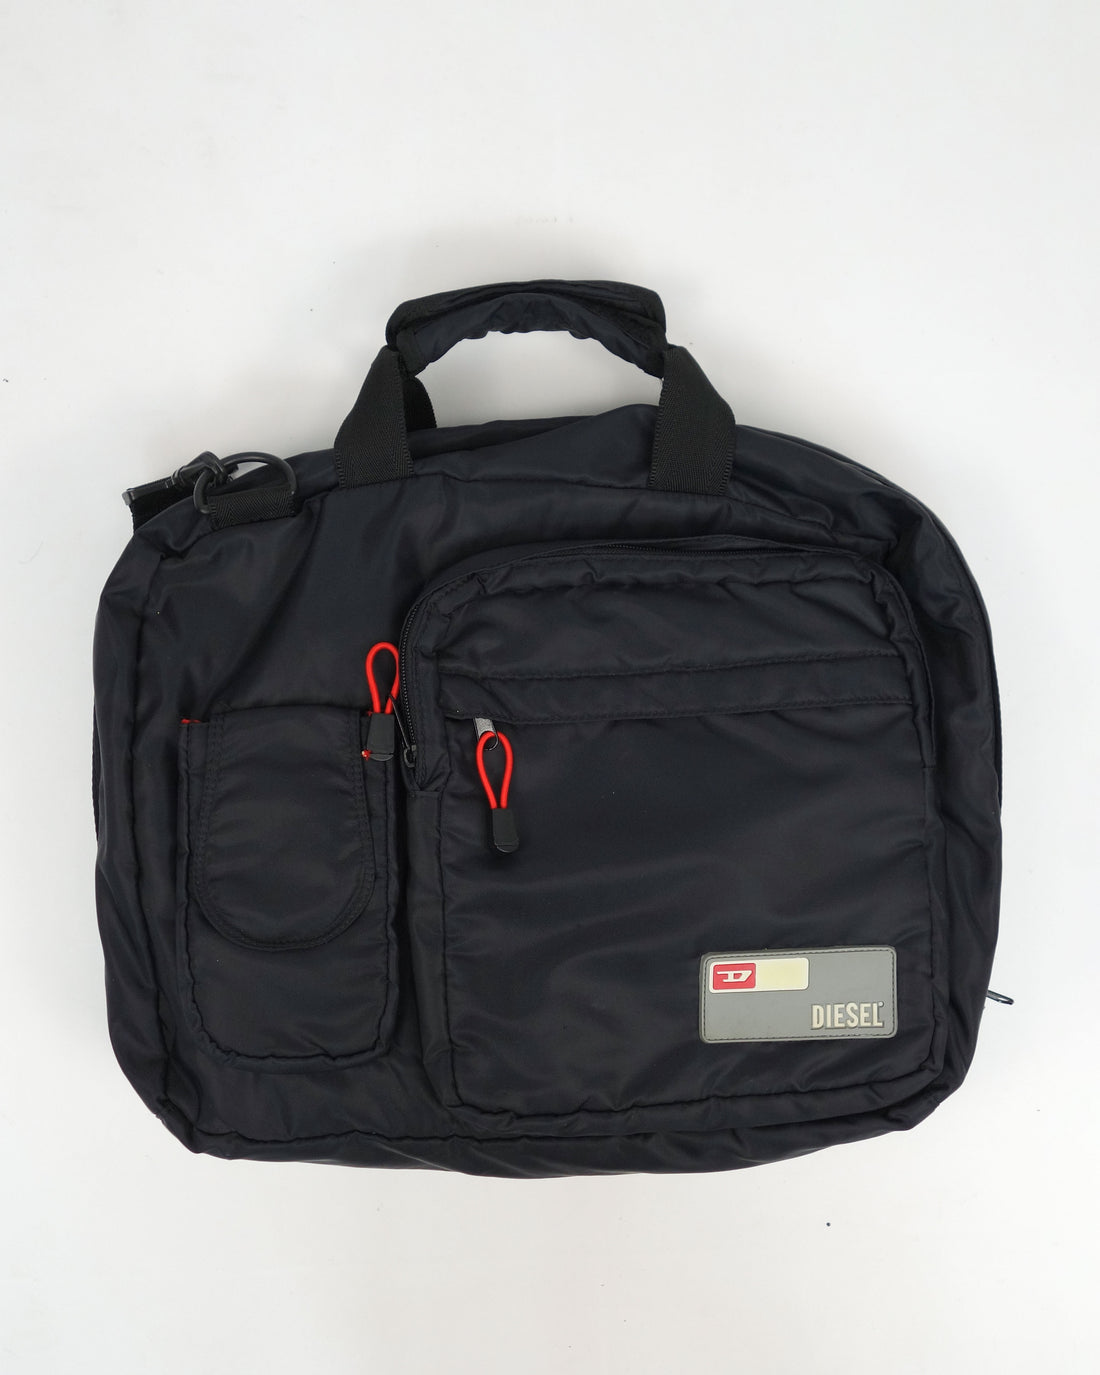 Diesel Utility Travel Nylon Side Bag 2000's